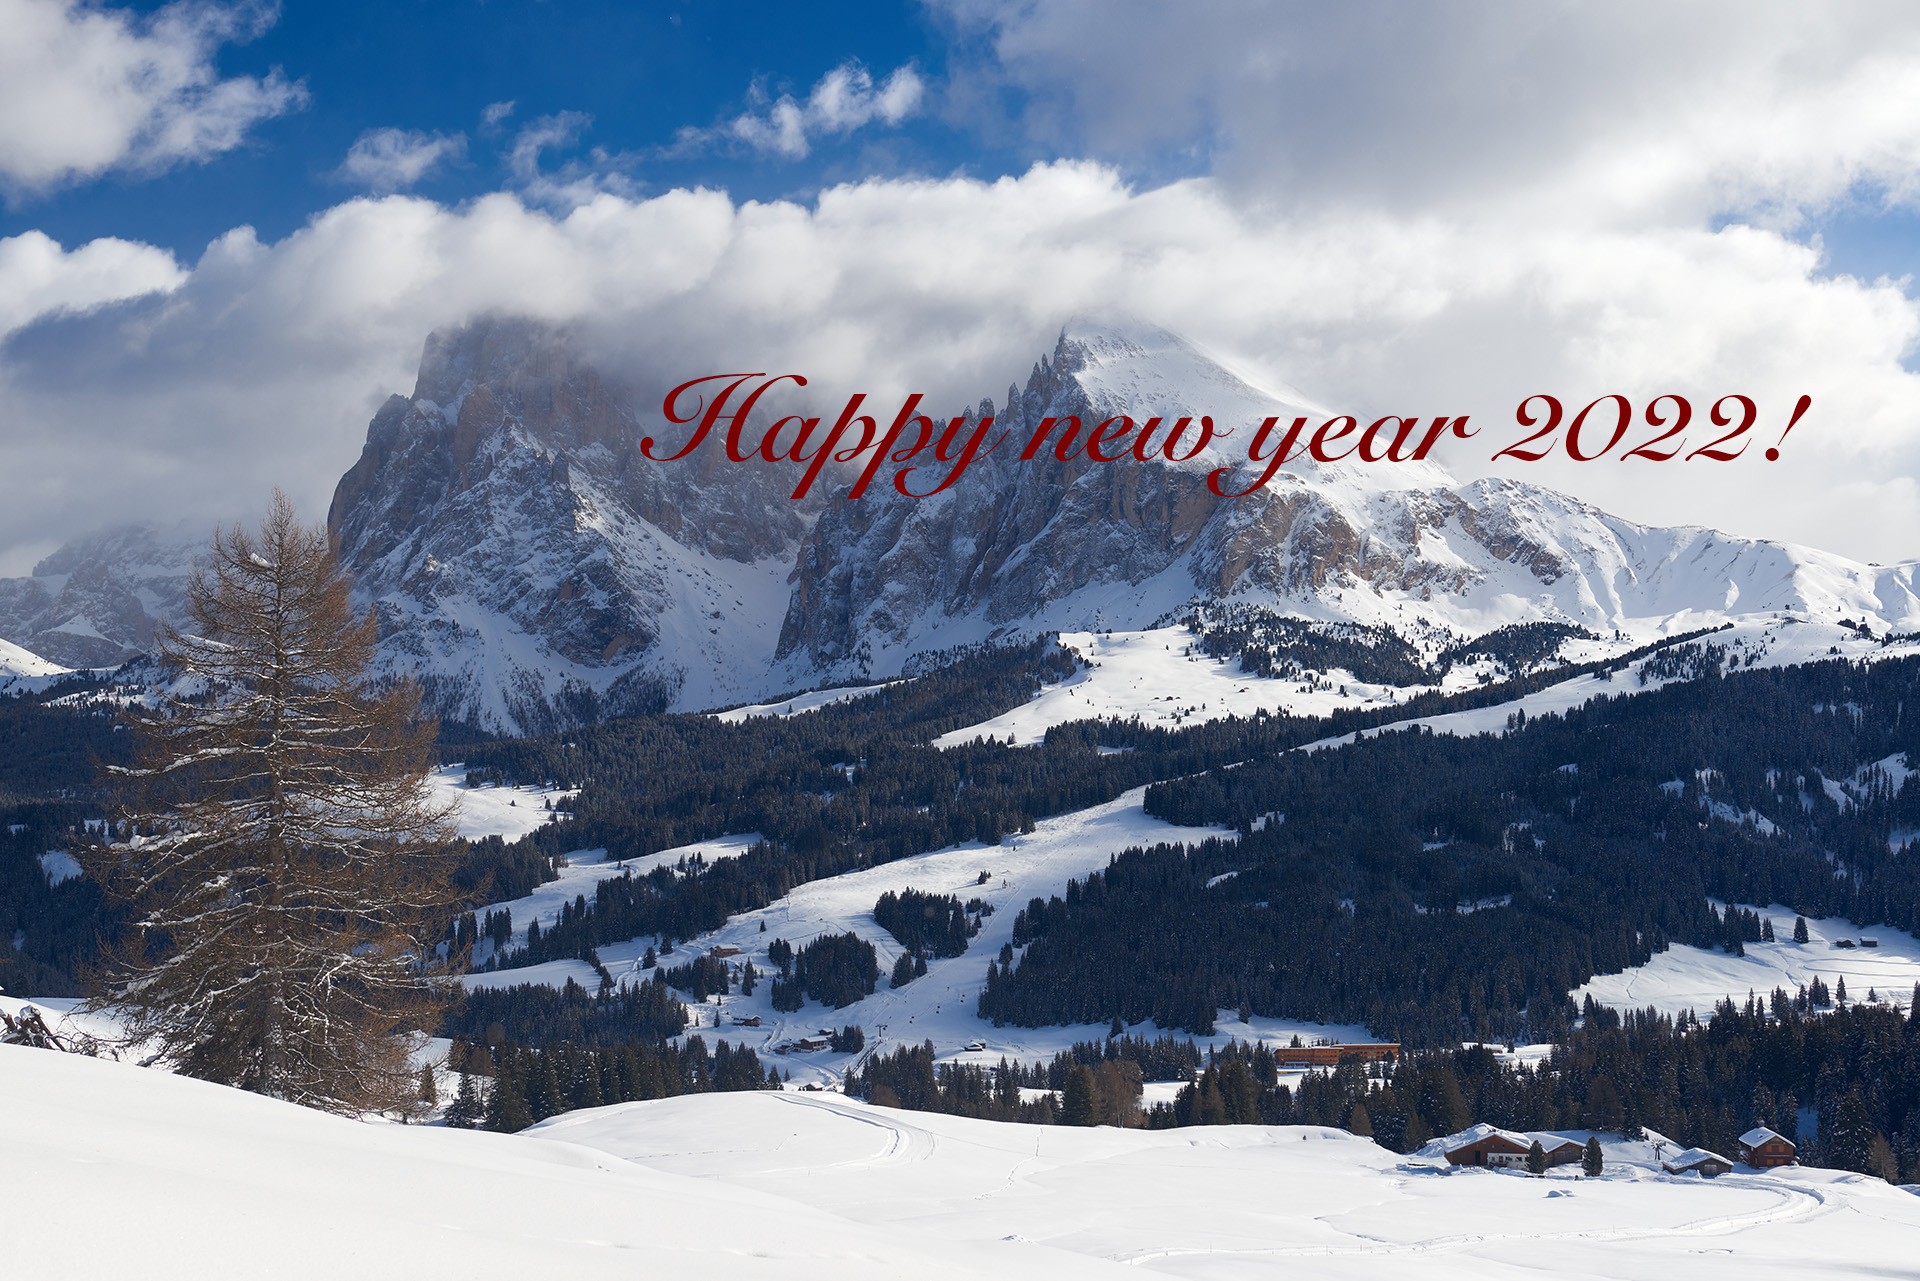 Frohes neues Jahr 2022 wünscht Fototrainer4you!